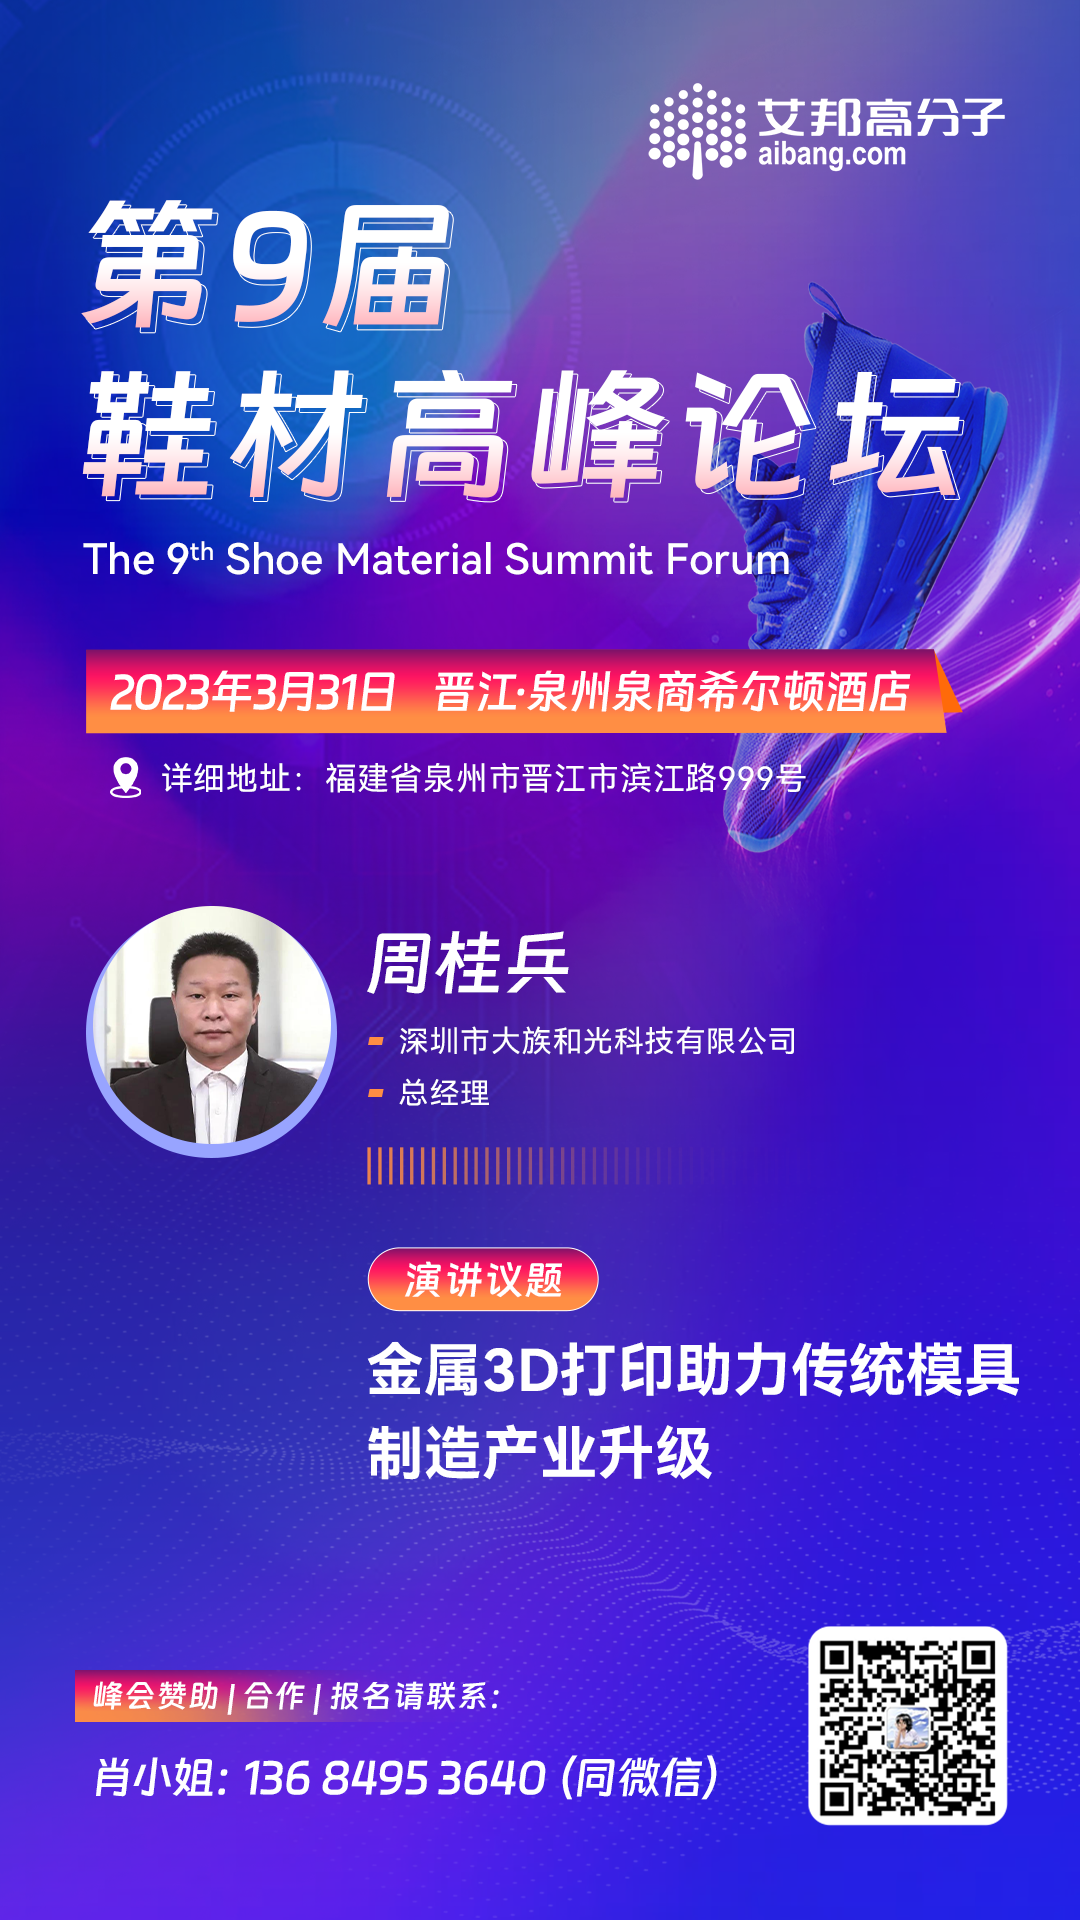 深圳大族和光将出席第九届鞋材高峰论坛并做主题演讲